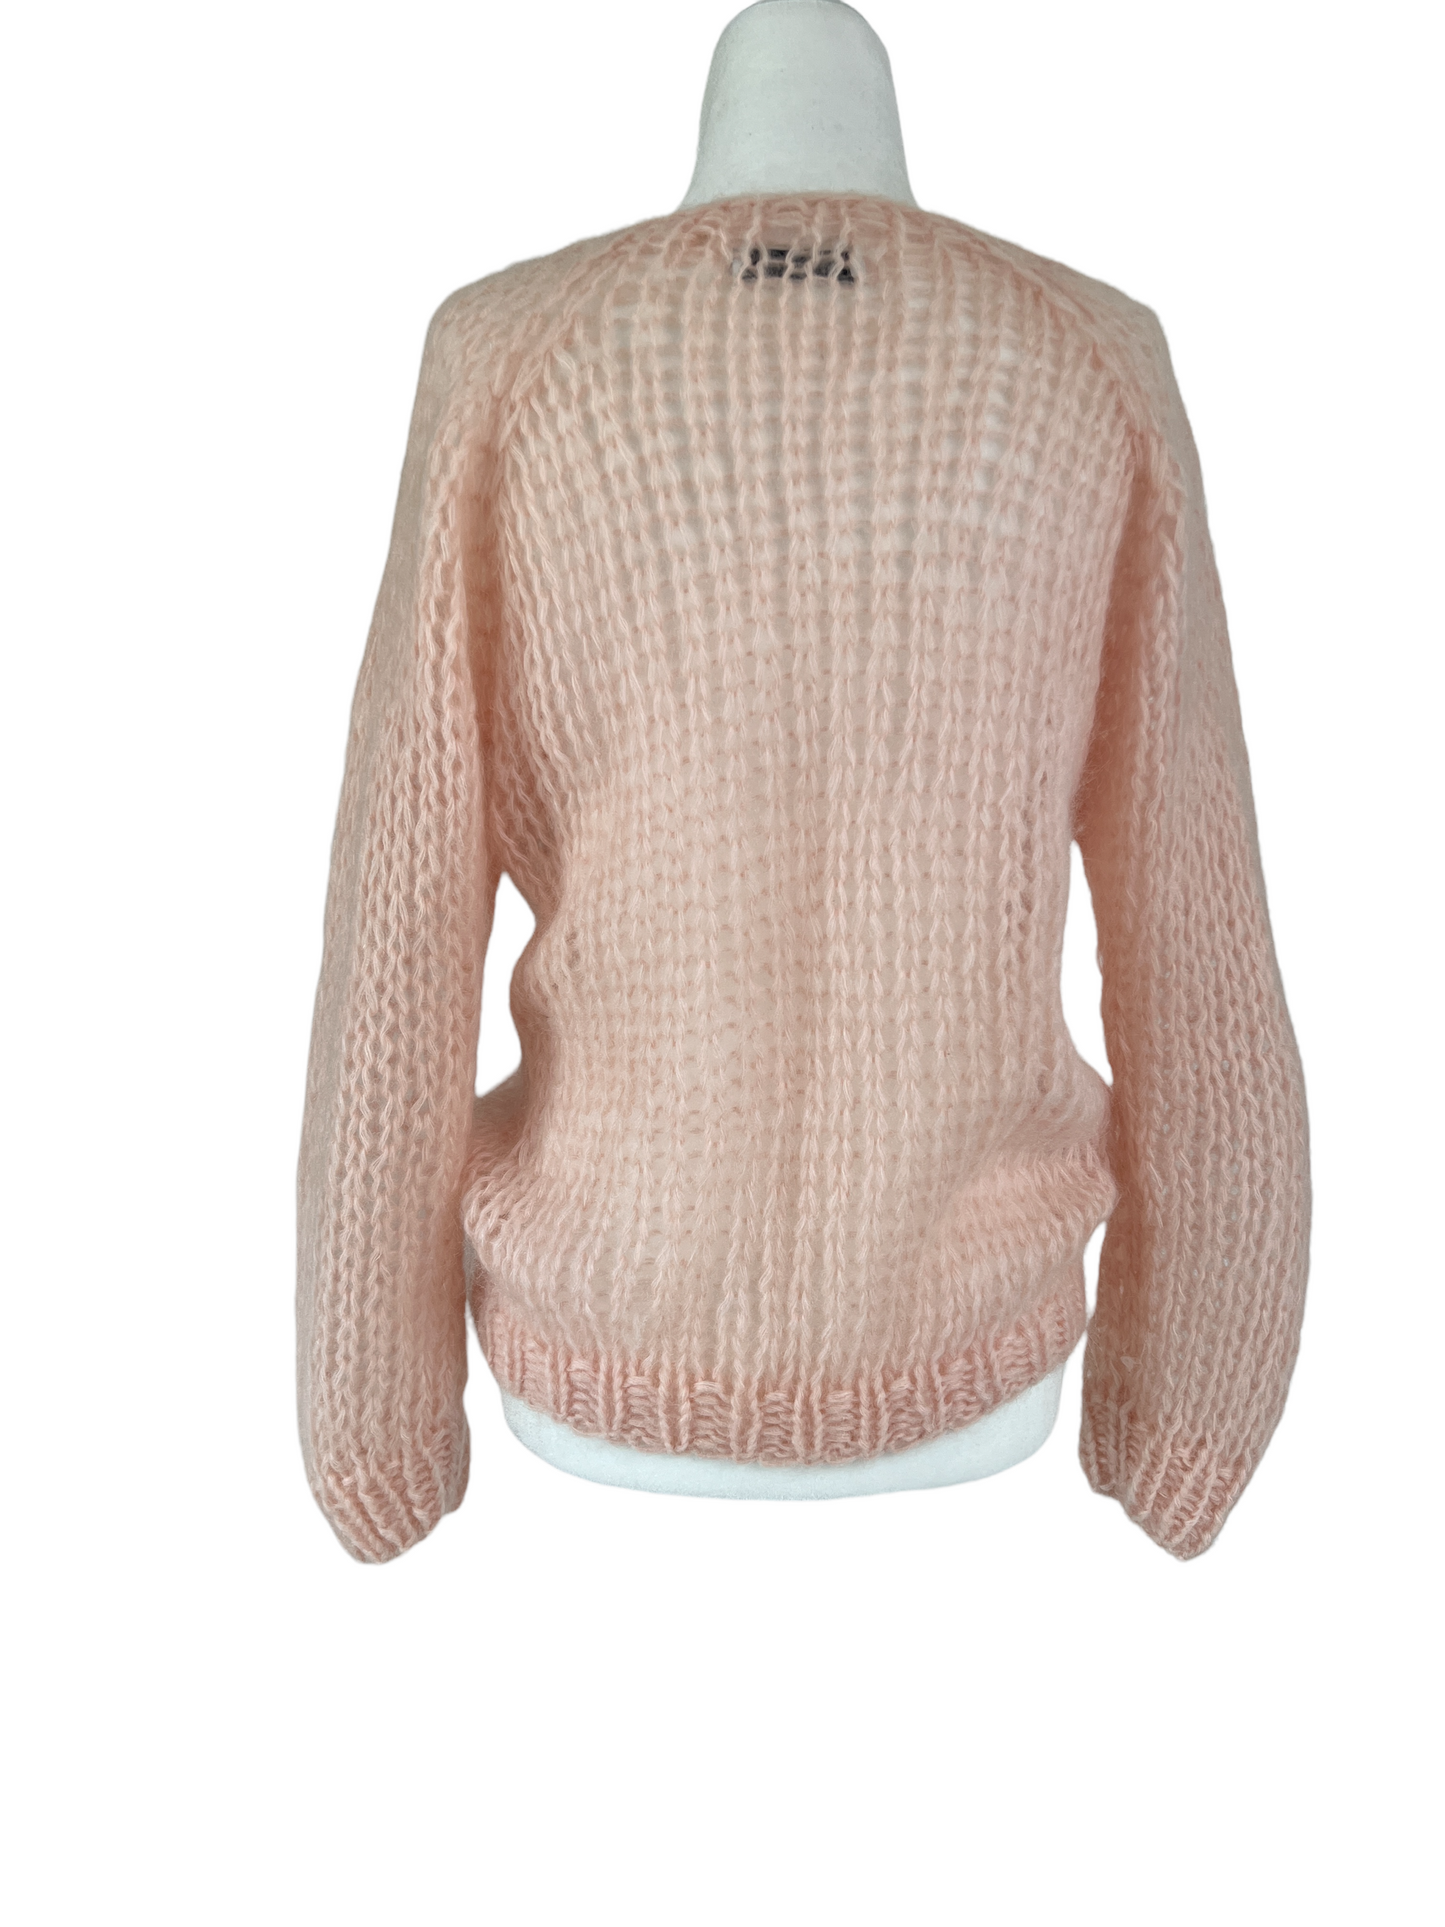 Light Pink Mohair Sweater - S